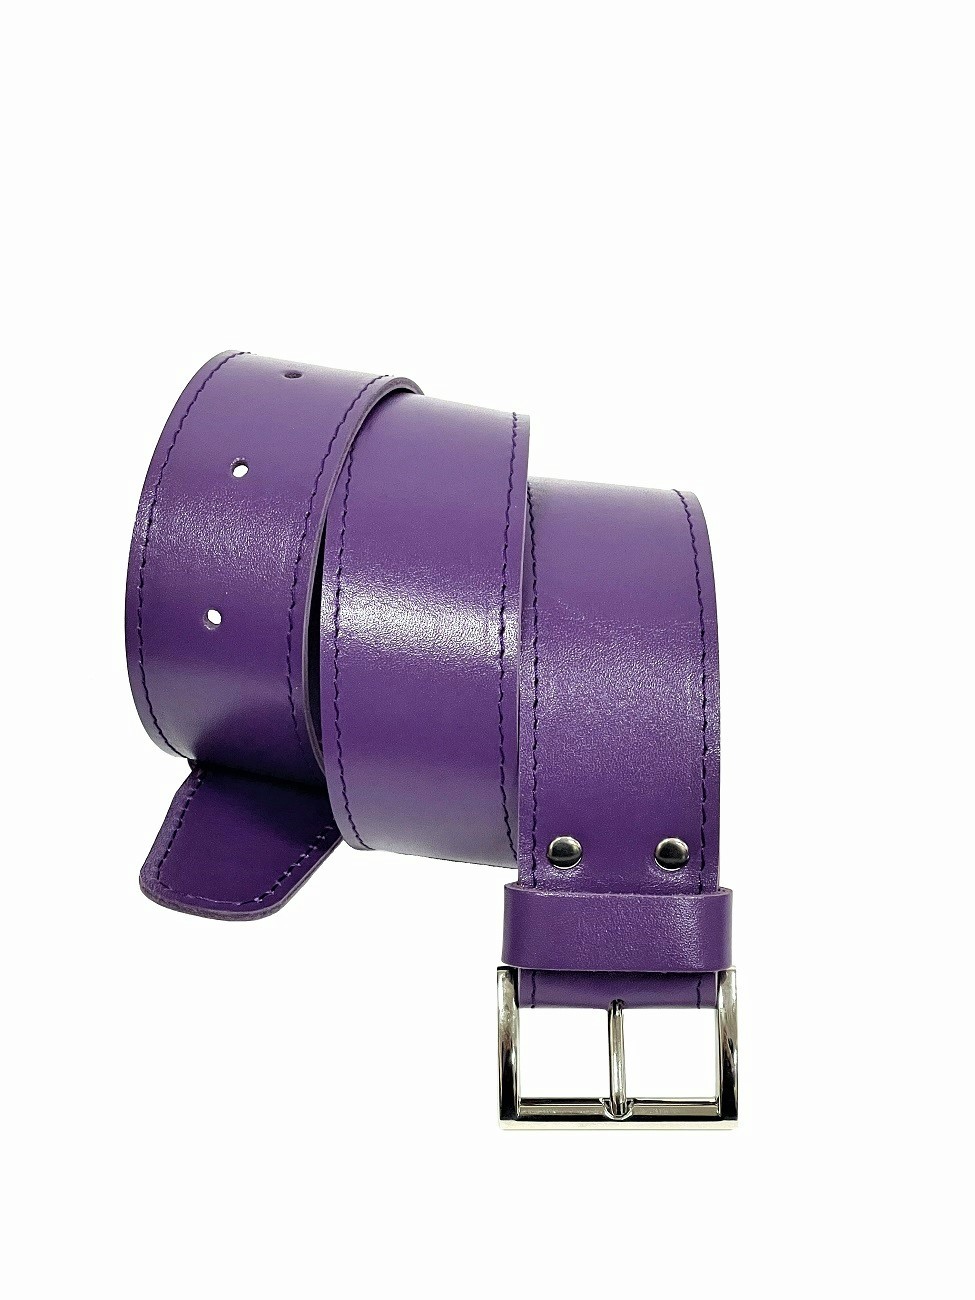 Поясной ремень из натуральной кожи фиолетовый T003 purple